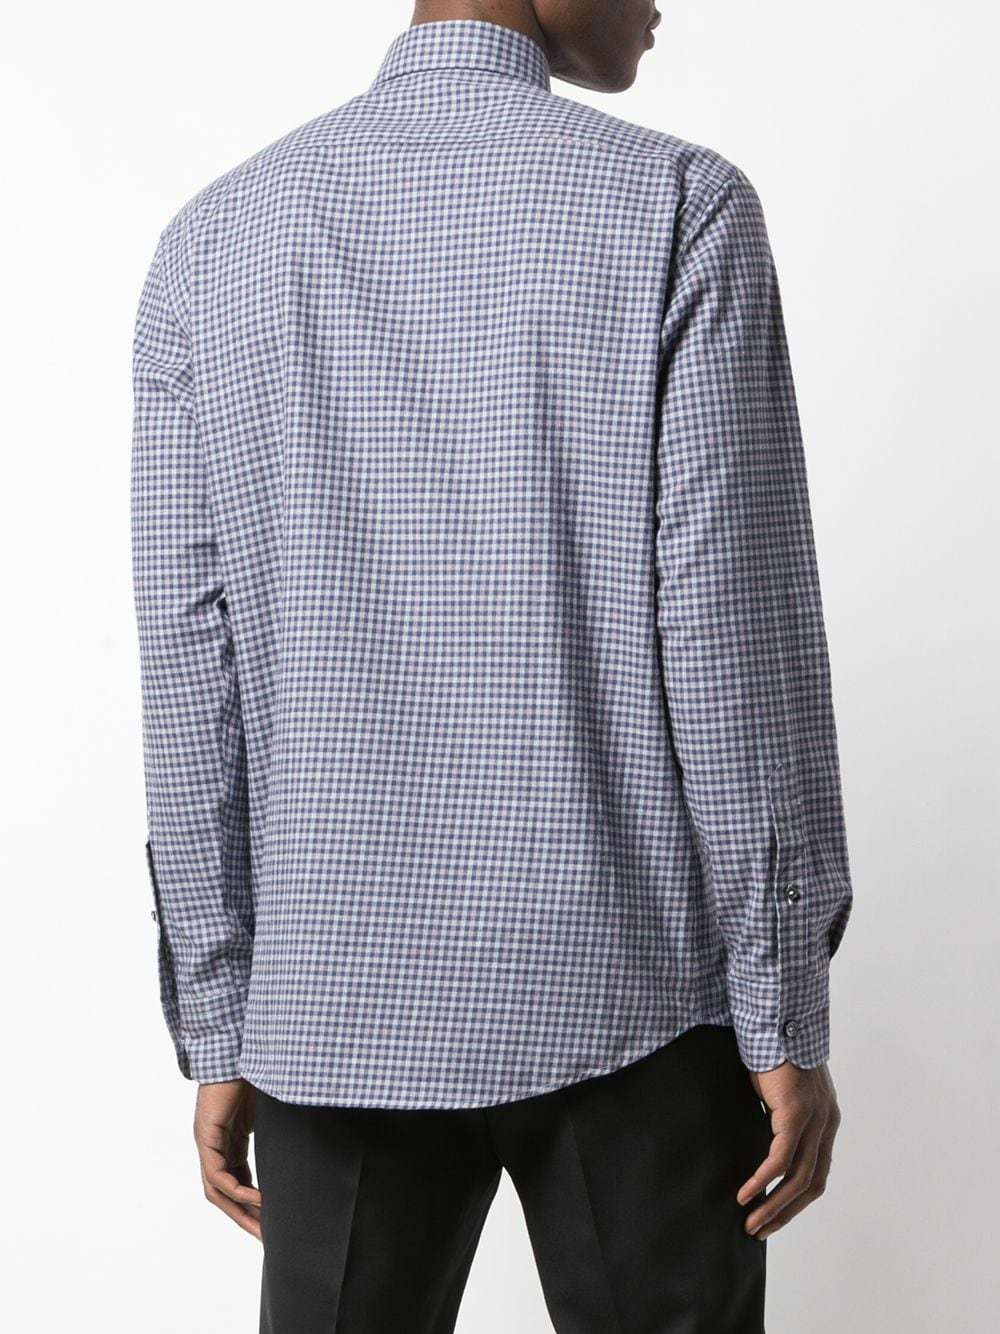 Ermenegildo Zegna Micro Check Shirt, $395 | farfetch.com | Lookastic